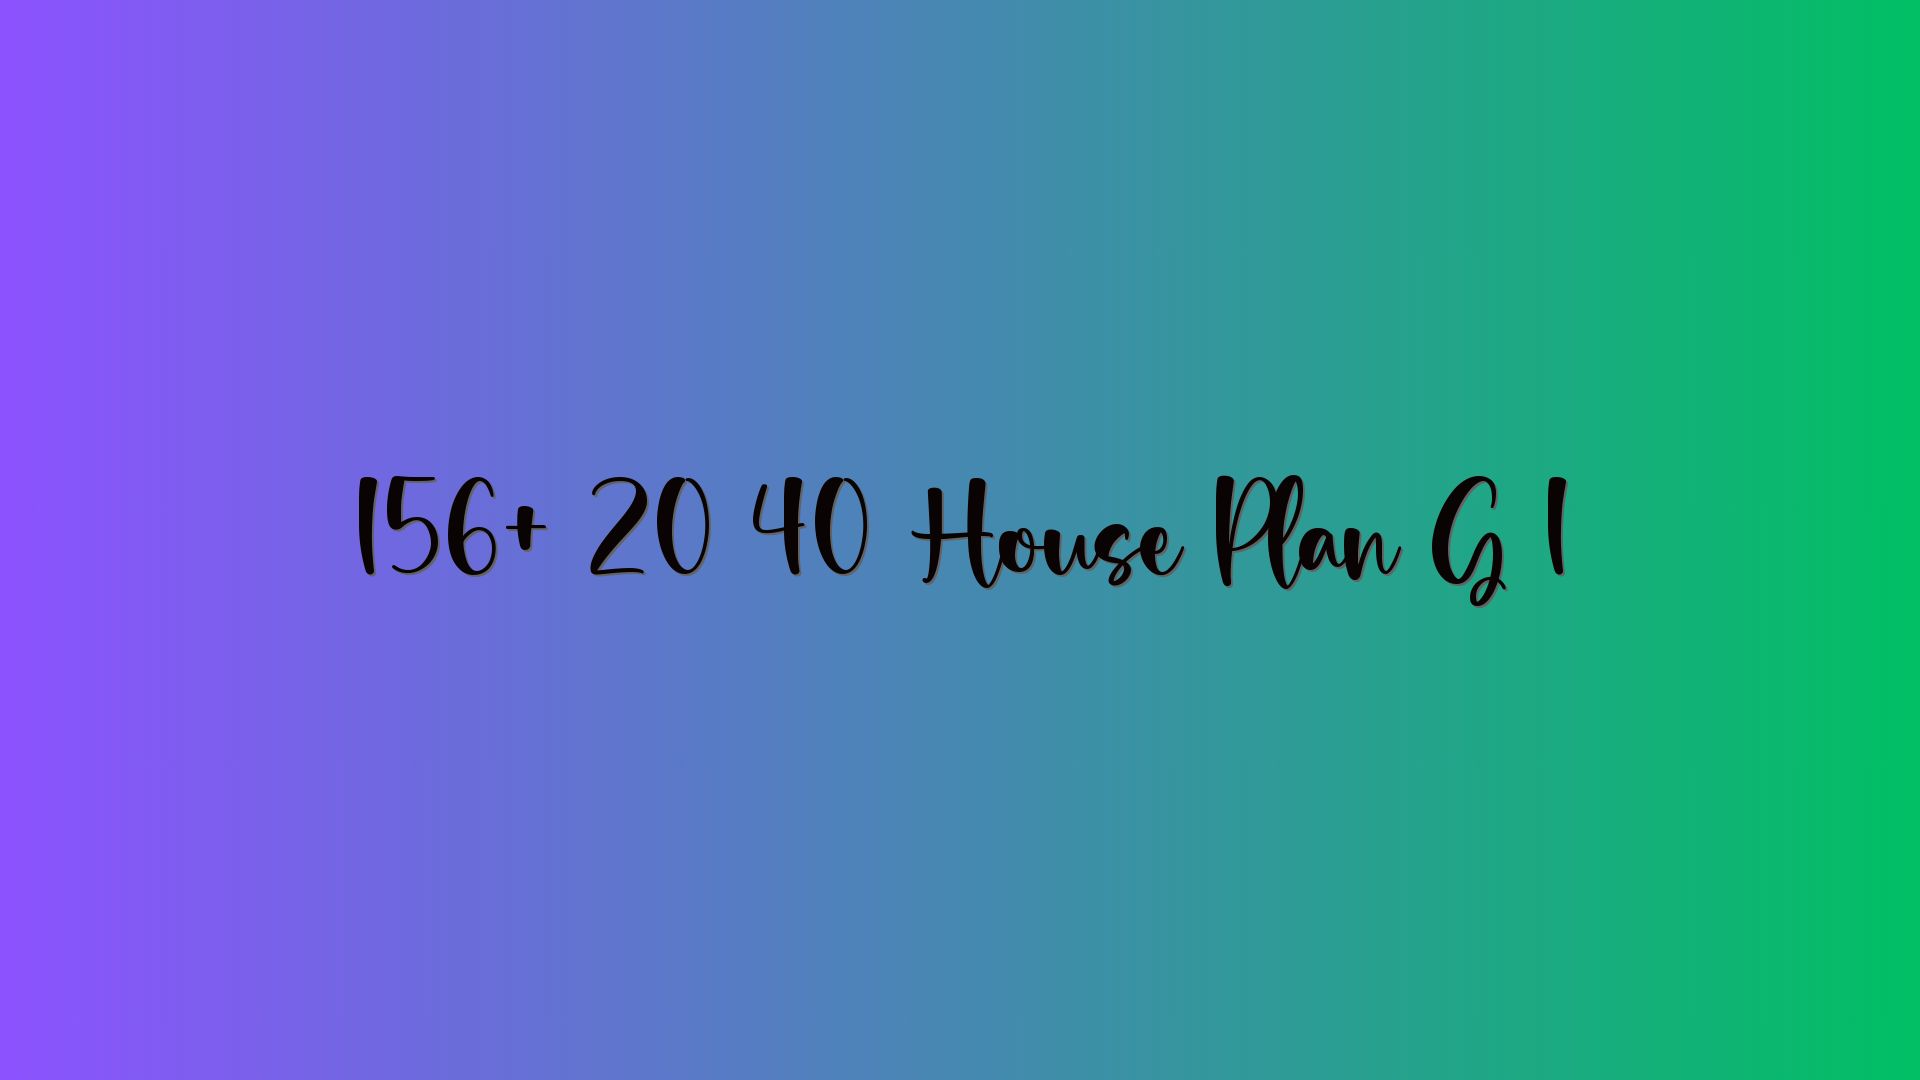 156+ 20 40 House Plan G 1